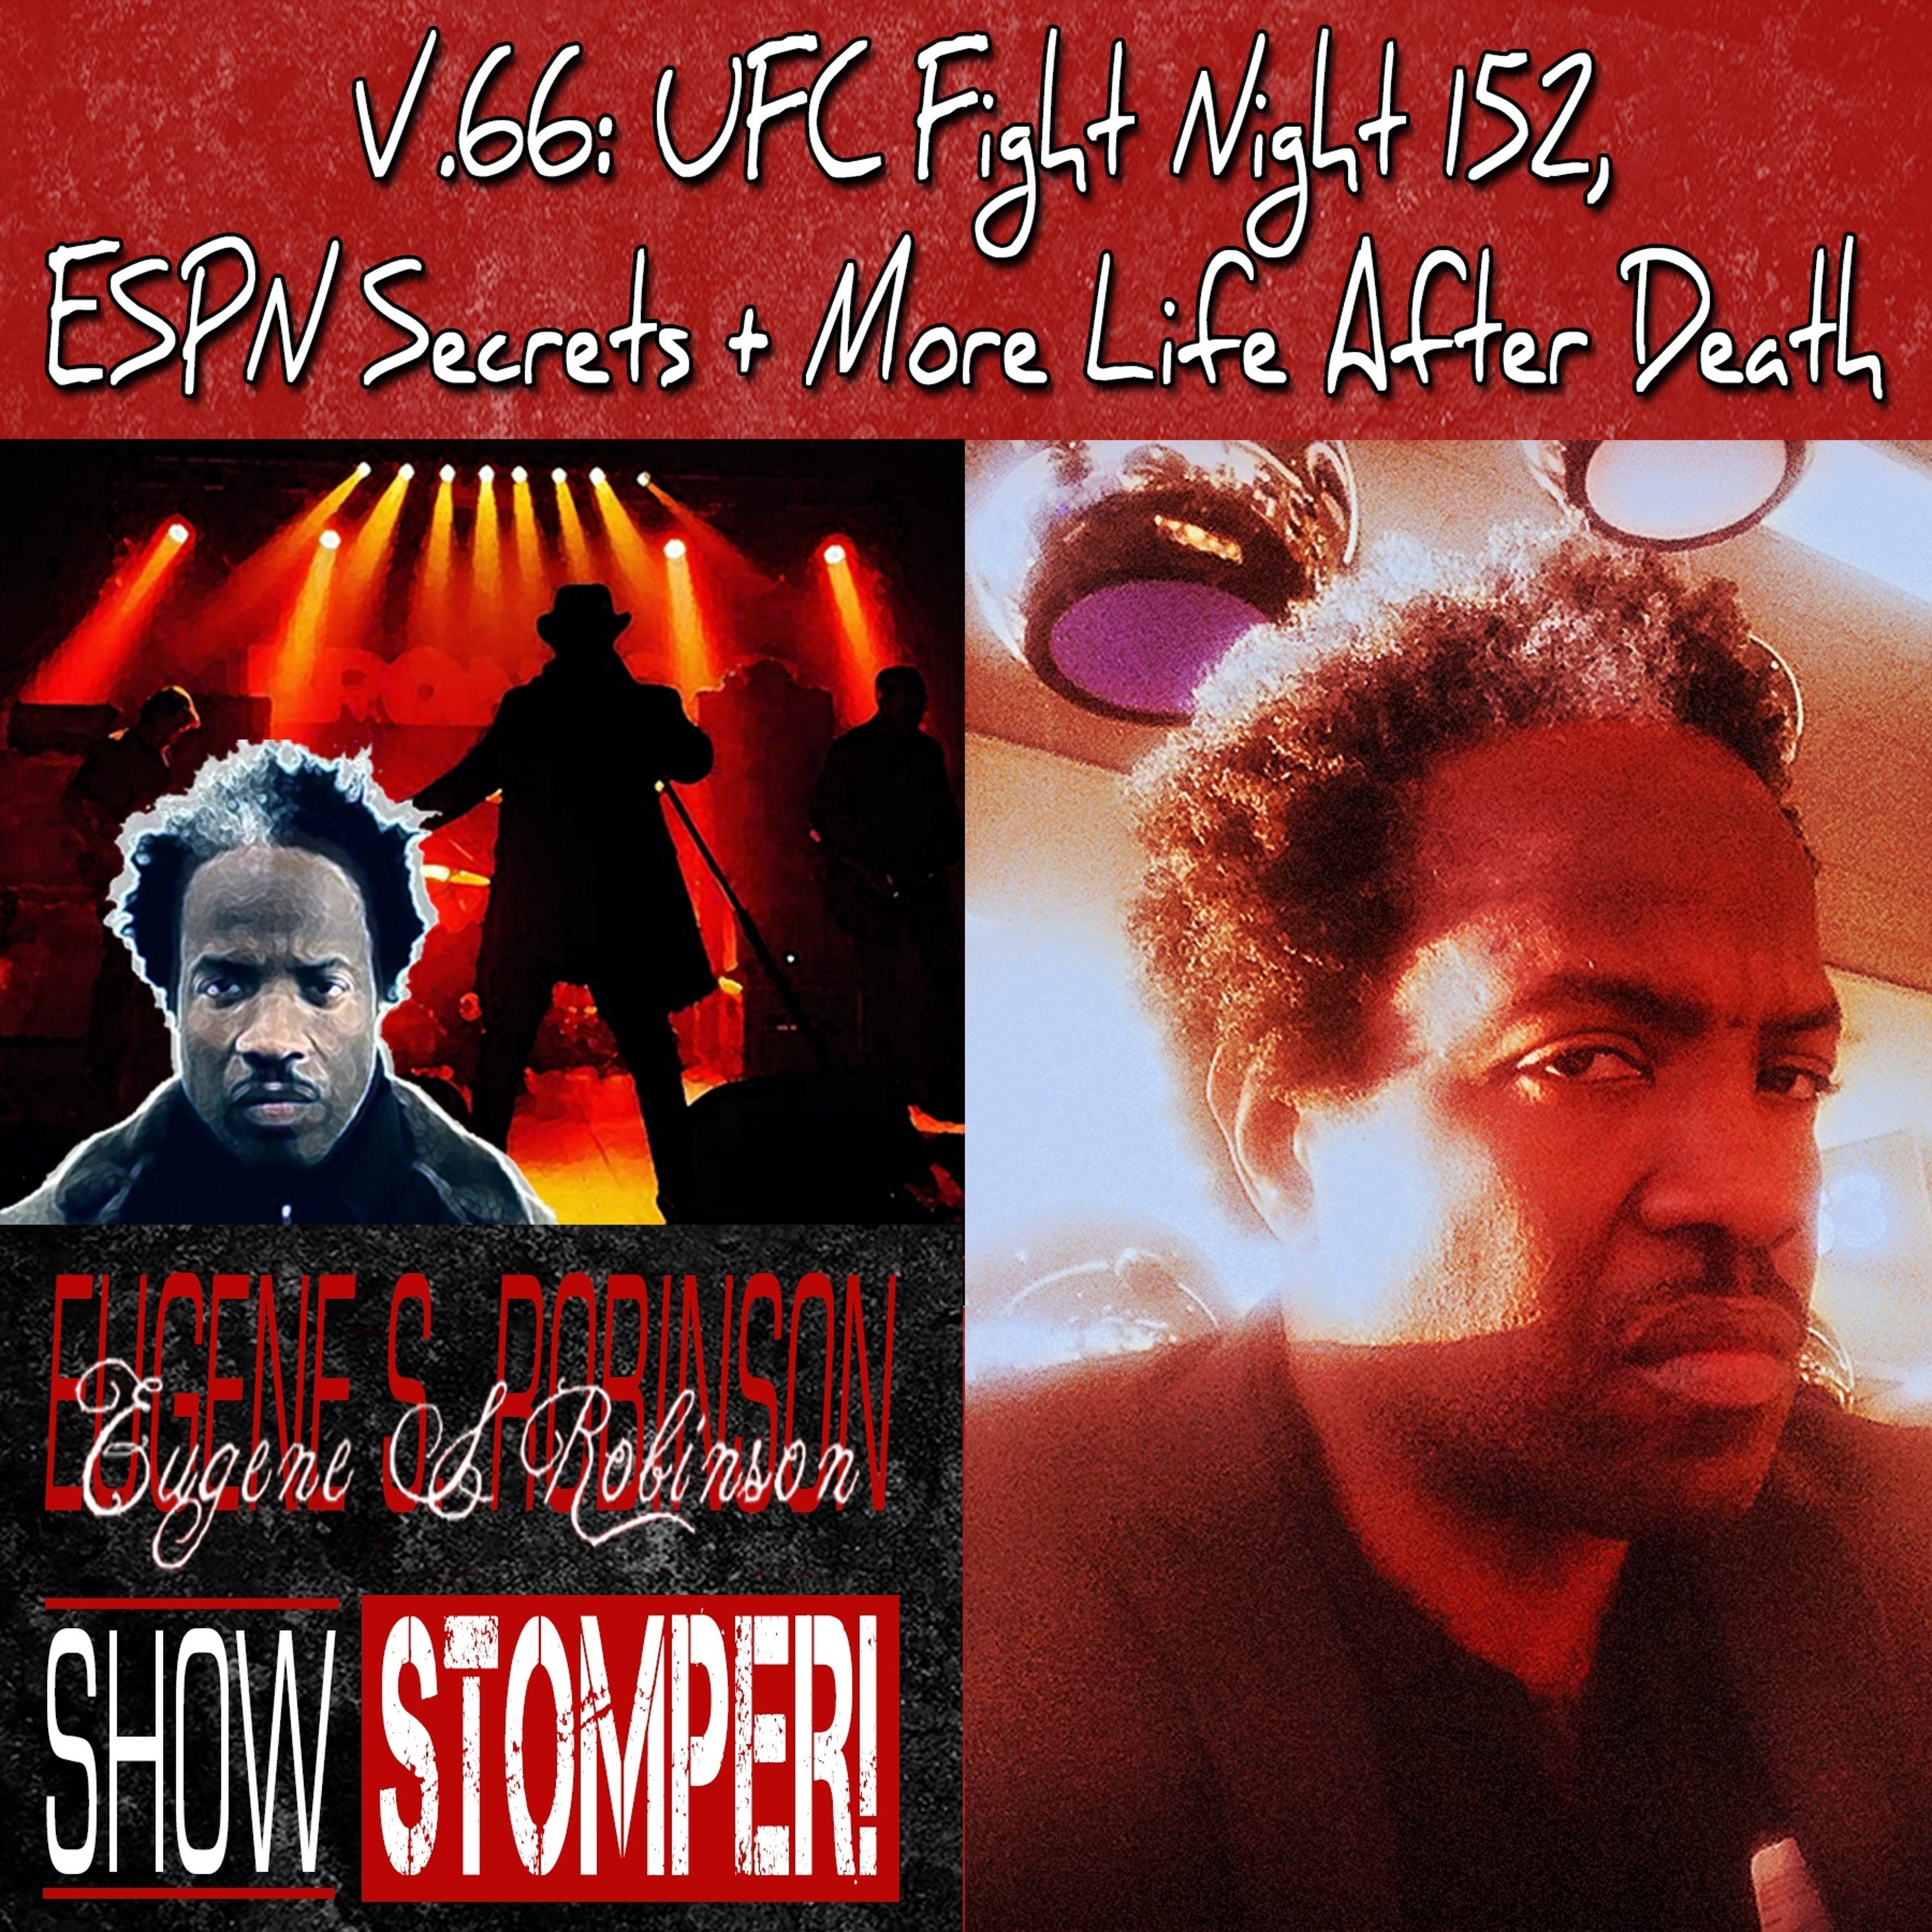 V.66 UFC FN 152, ESPN Secrets + More Life After Death On The Eugene S. Robinson Show Stomper!